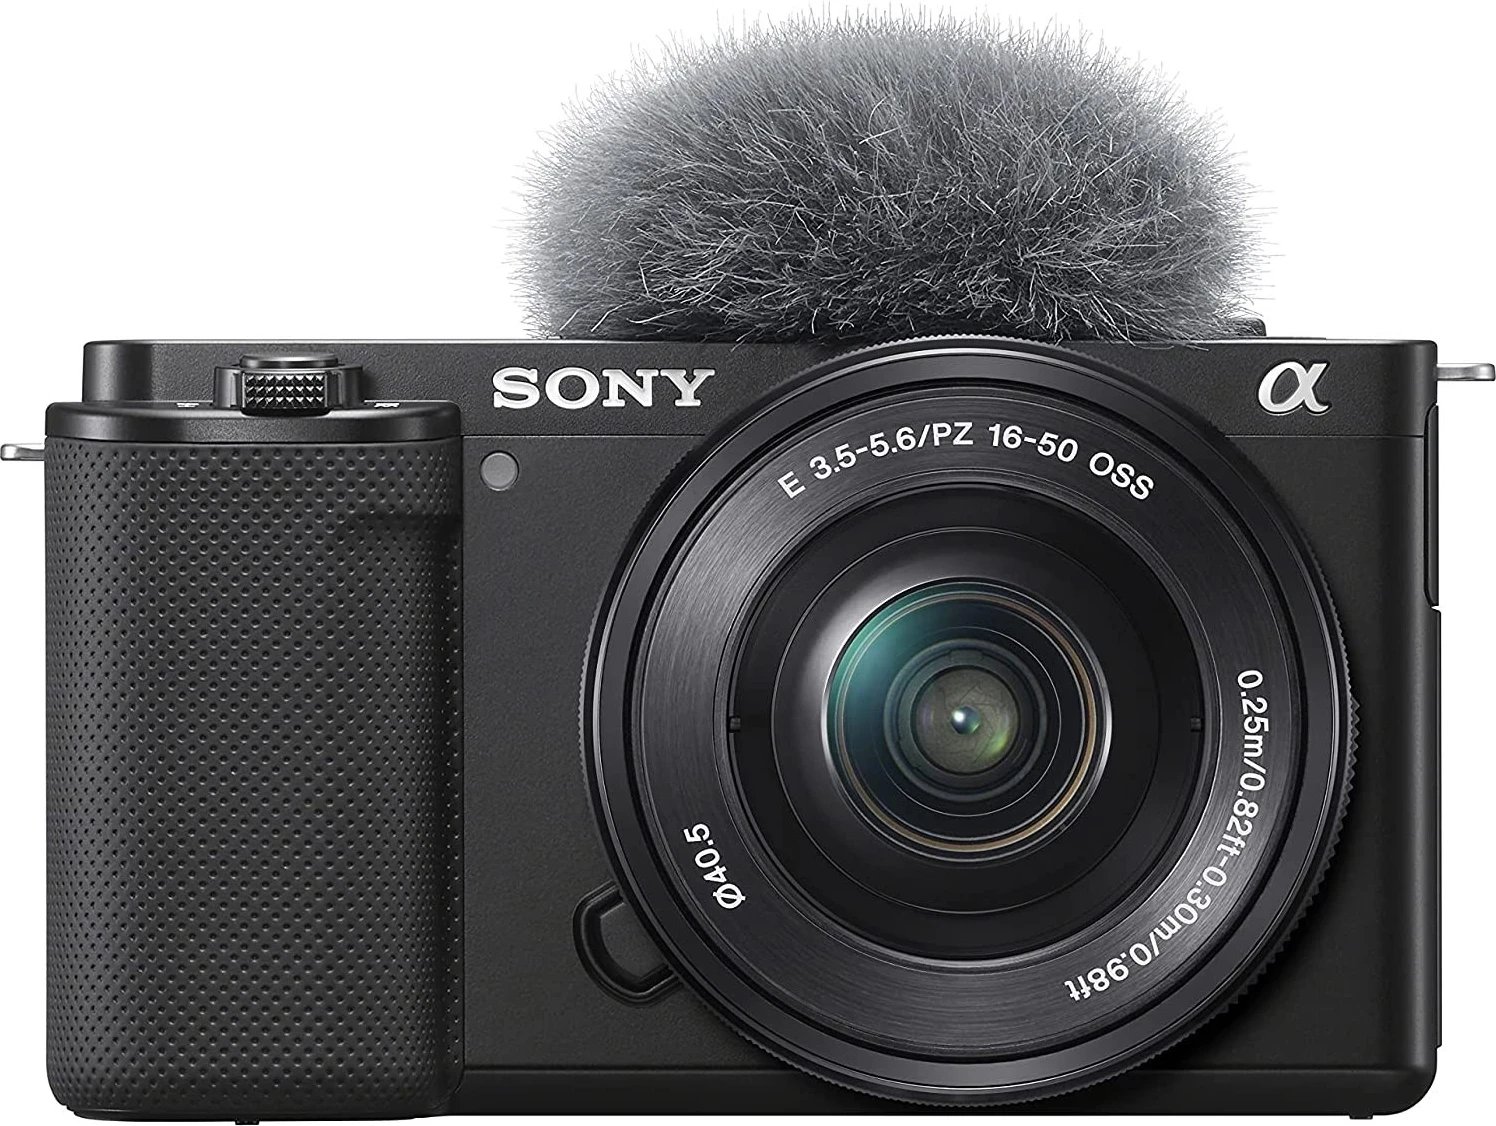 Kamera Sony, ZV-E10 me objektiv 16-50 mm f/3.5-5.6 OSS, për videoblogje